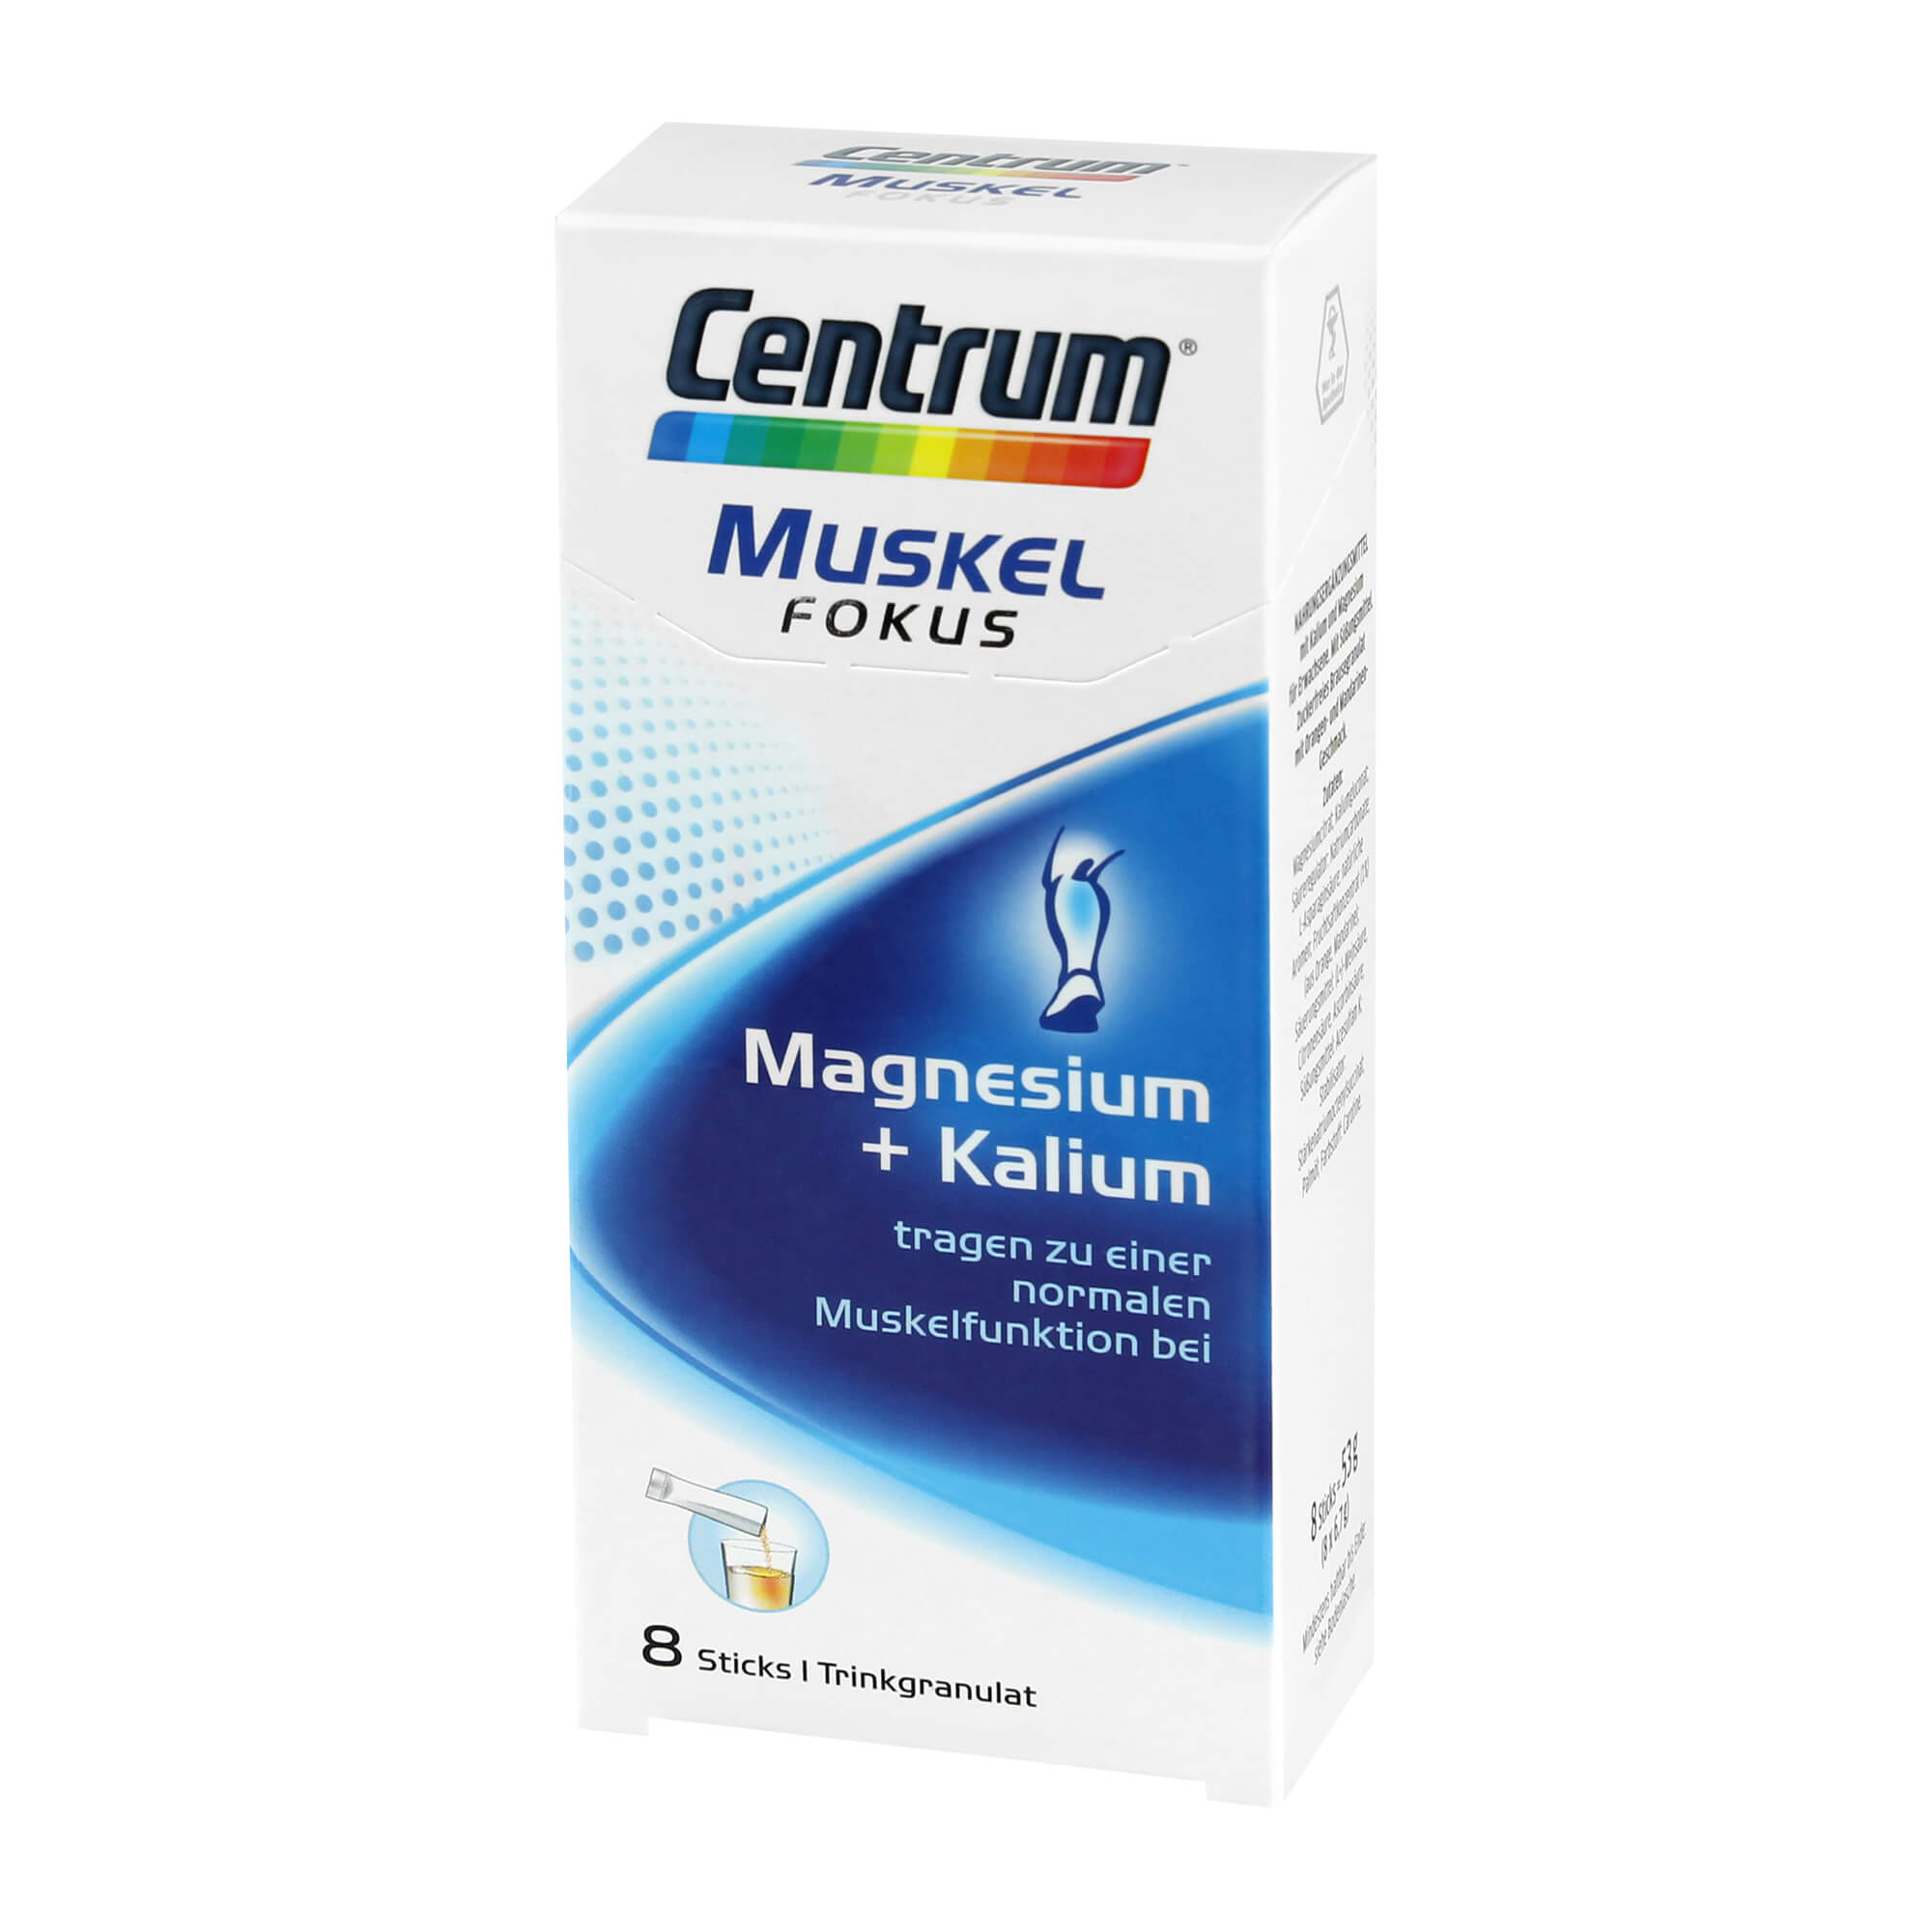 Nahrungsergänzungsmittel mit Kalium, Magnesium und Süßungsmittel.